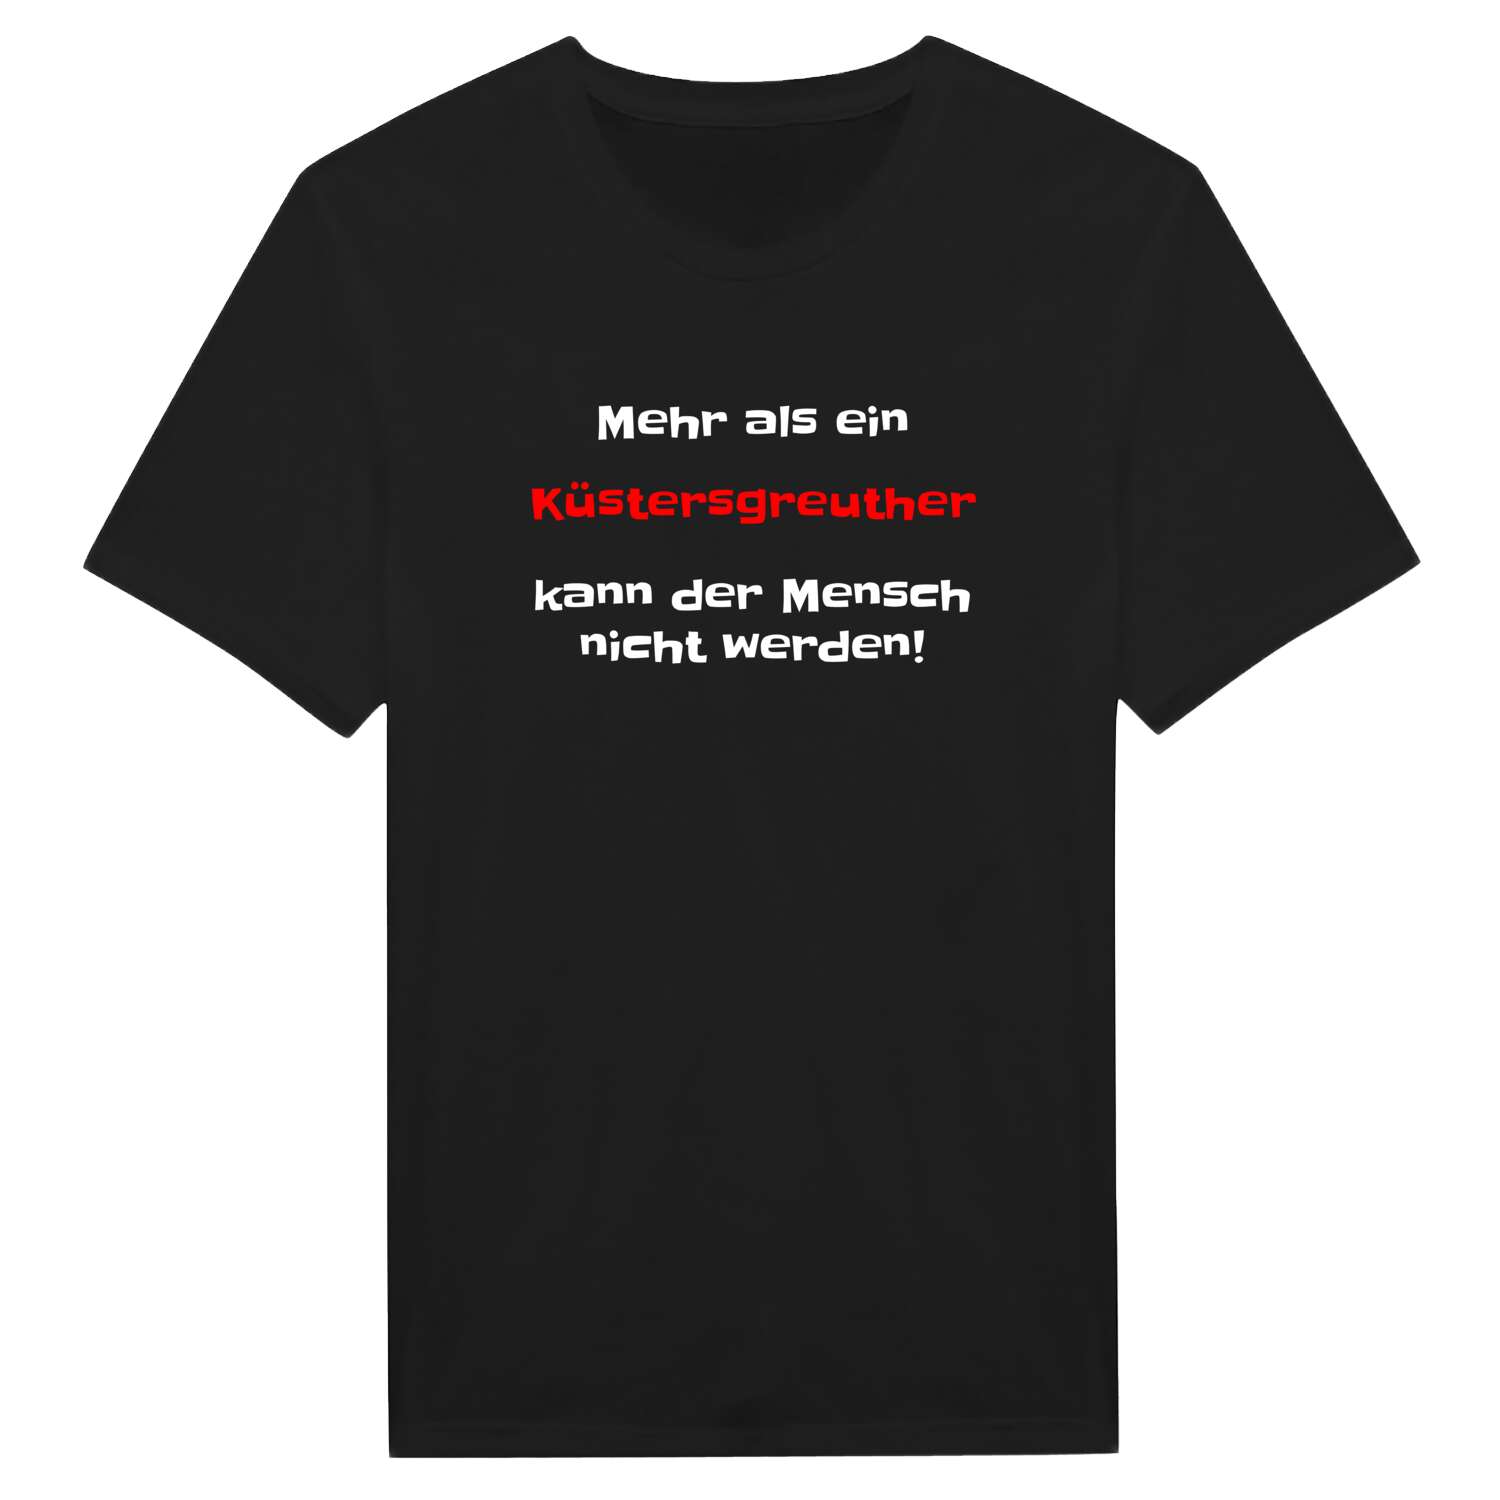 Küstersgreuth T-Shirt »Mehr als ein«